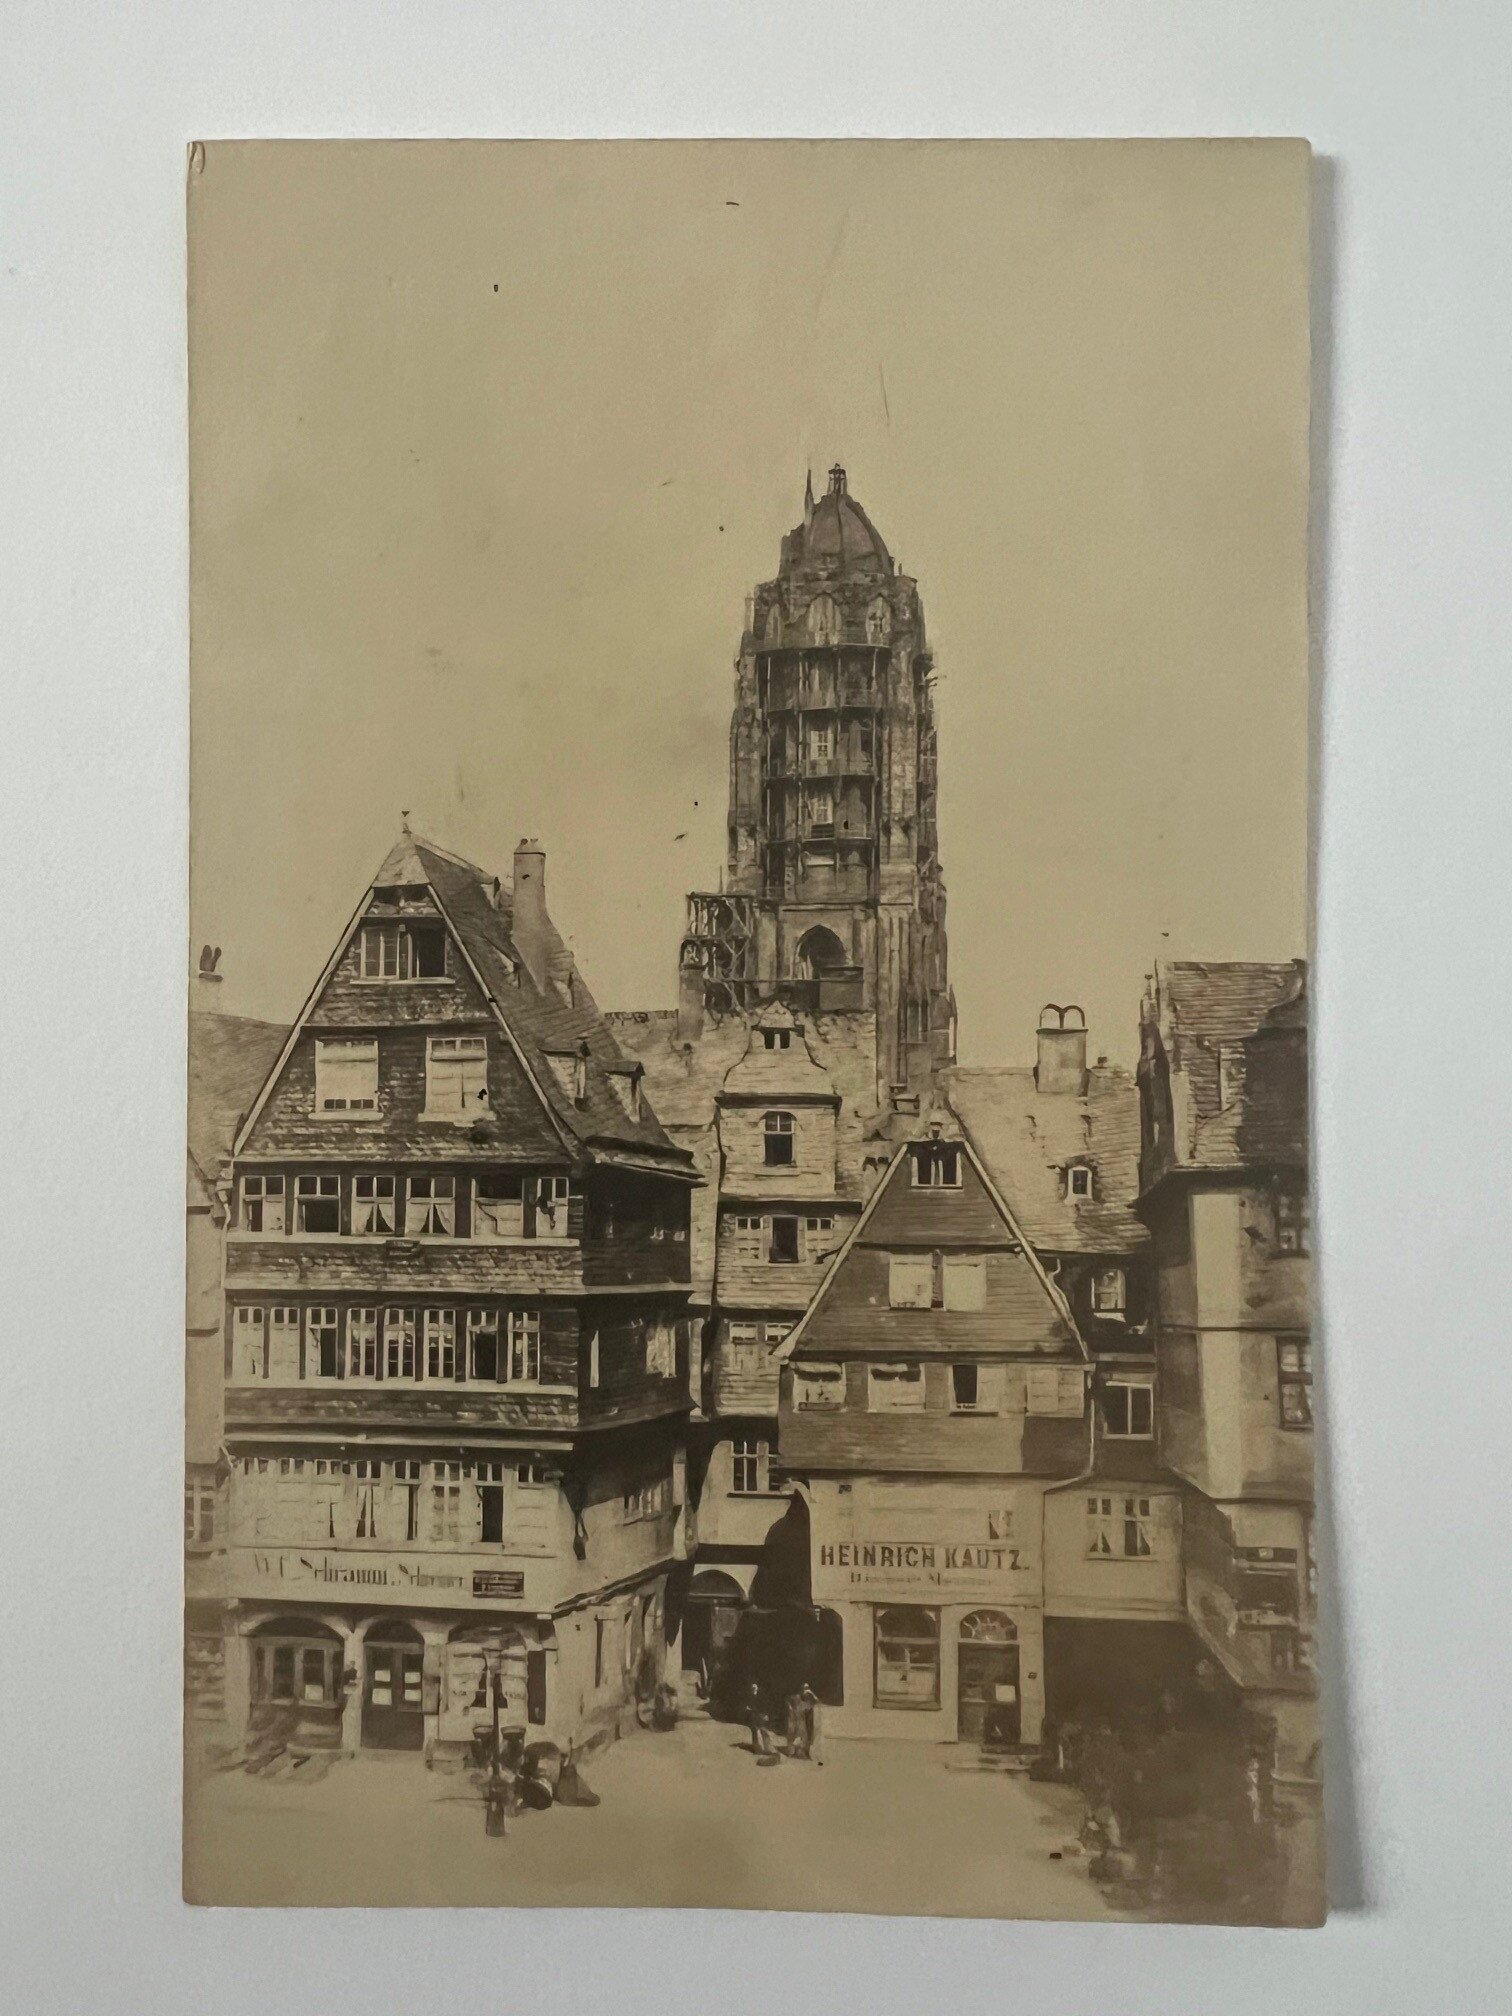 Gottfried Vömel, Frankfurt, Der Samstagsberg, Abzug von alten Platte von Mylius von 1869, ca. 1905. (Taunus-Rhein-Main - Regionalgeschichtliche Sammlung Dr. Stefan Naas CC BY-NC-SA)